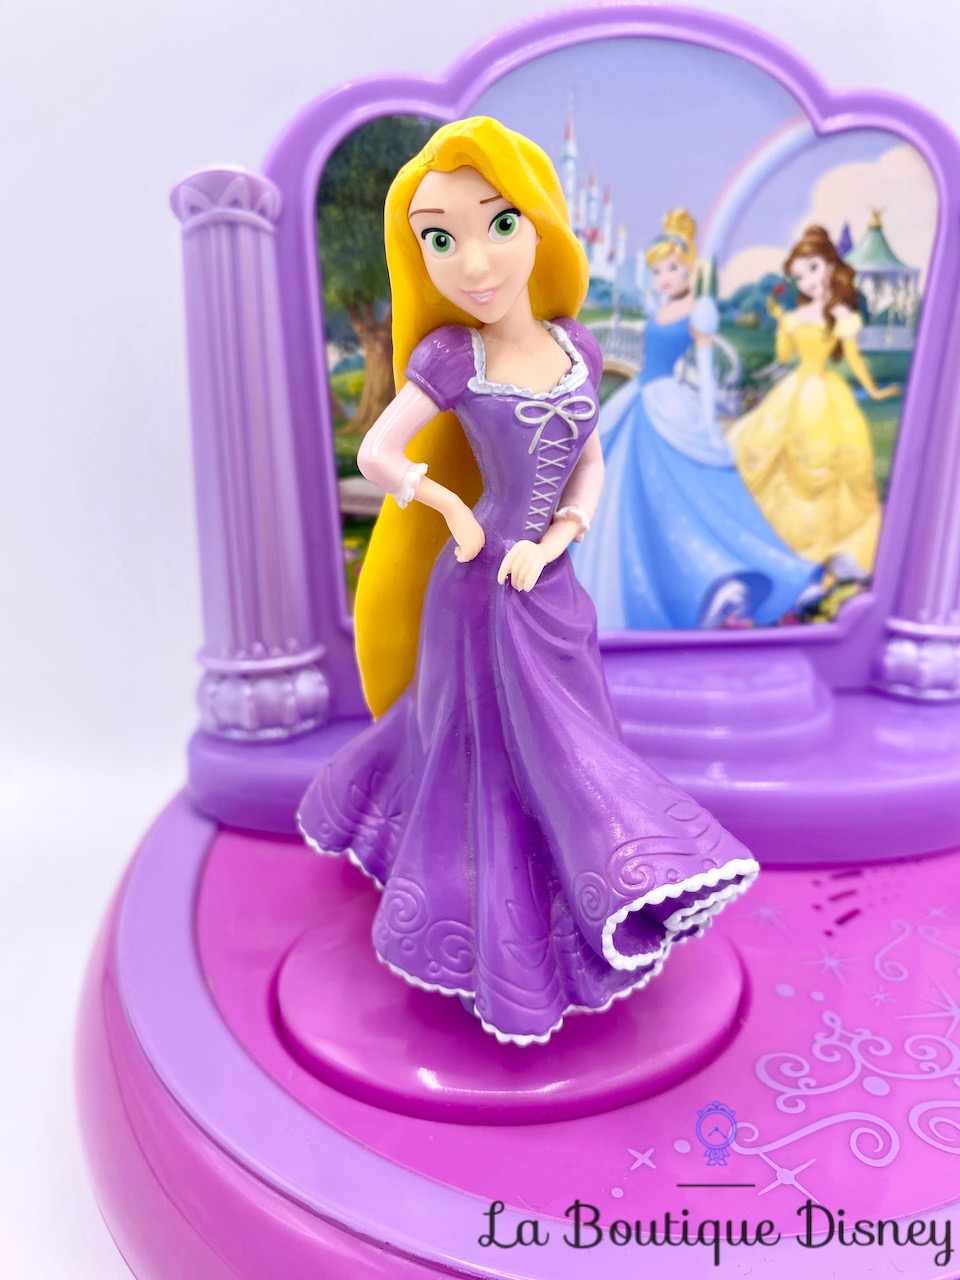 Disney princesses - radio reveil projecteur, musiques, sons & images